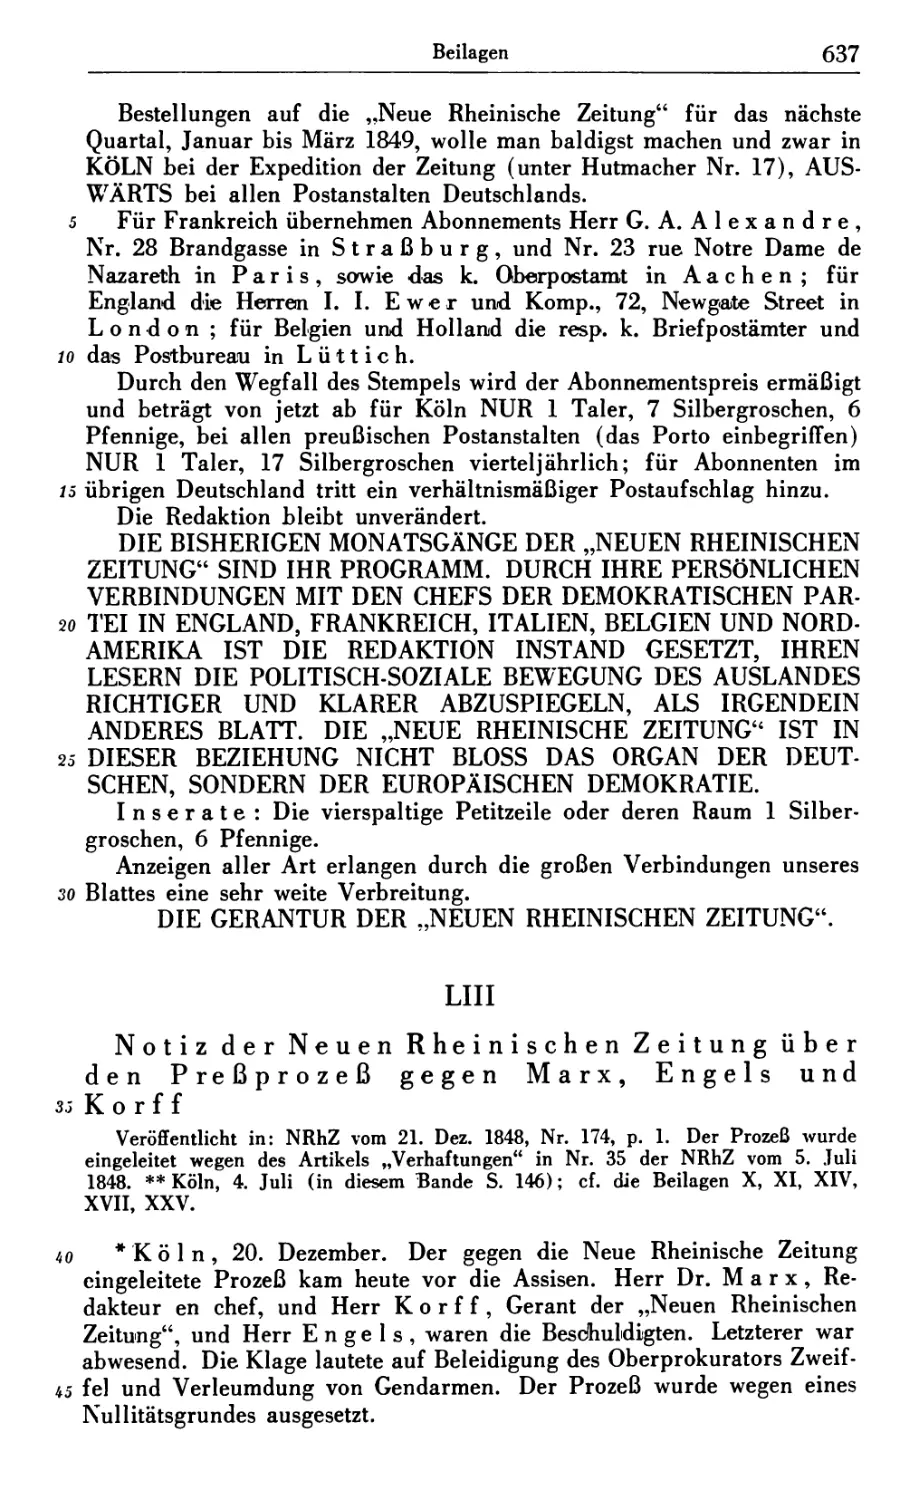 LIII. Notiz der Neuen Rheinischen Zeitung über den Preßprozeß gegen Marx, Engels und Korff